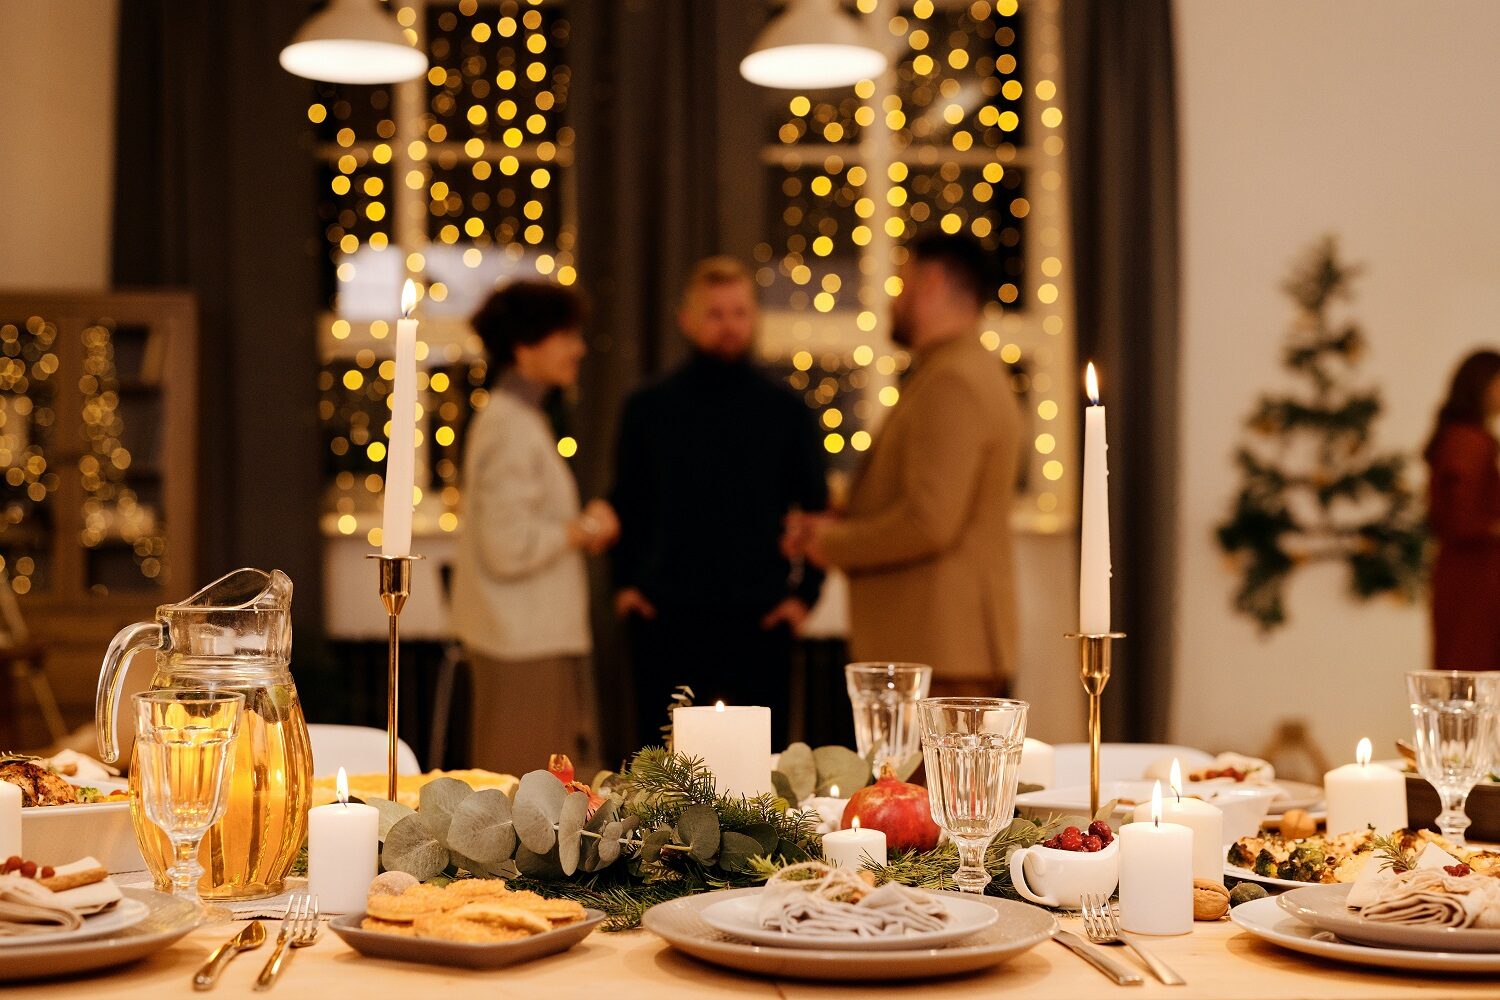 prim plan cu o masă frumos decorată de Crăciun, iar in fundal 3 oameni care stau de vorbă